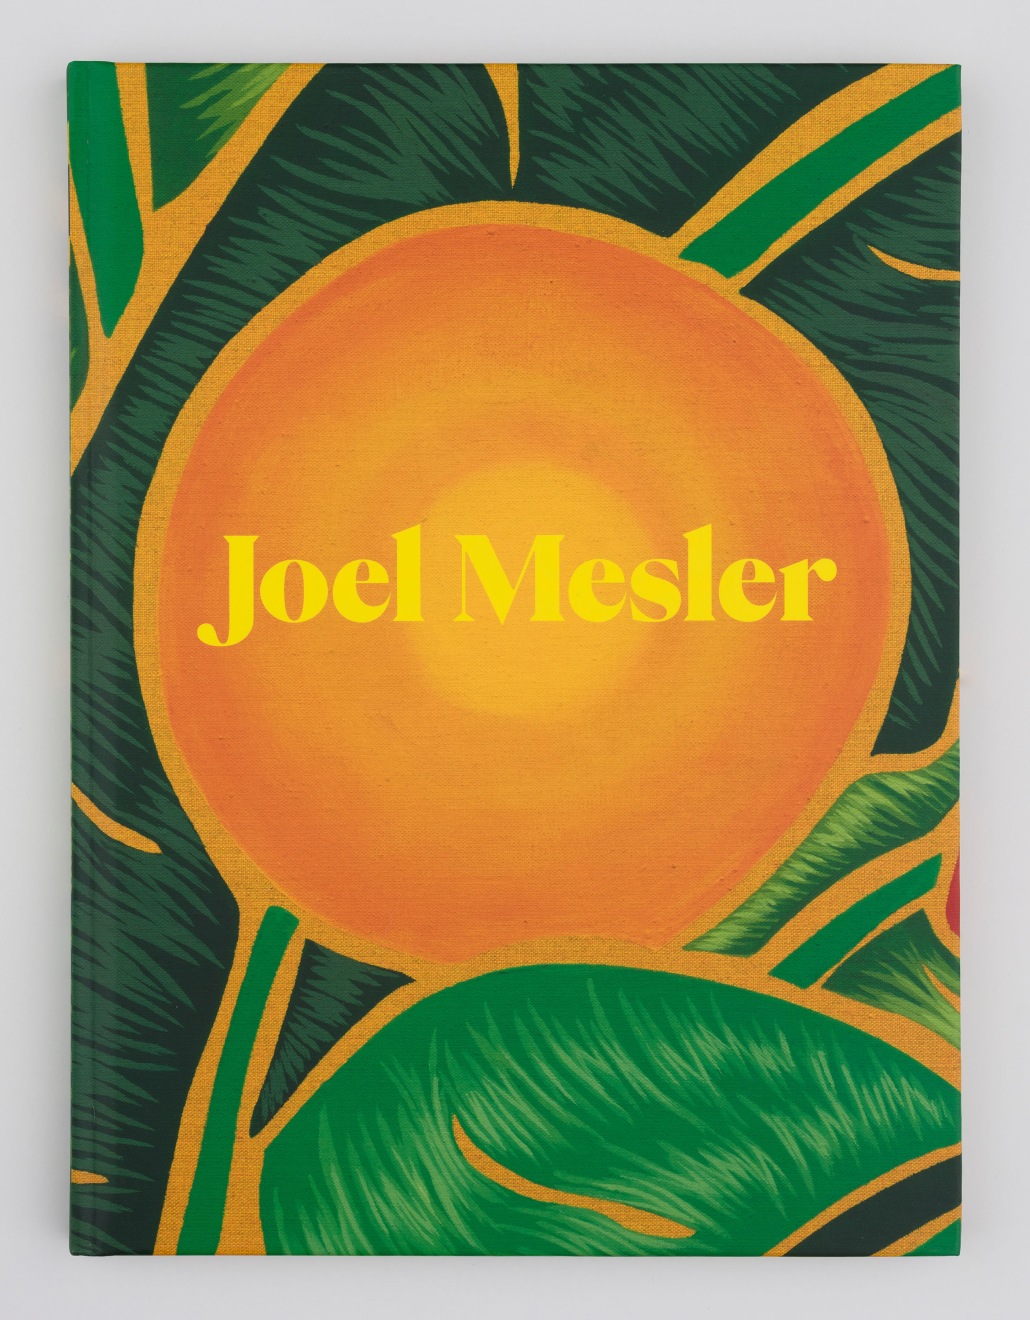 Joel Mesler